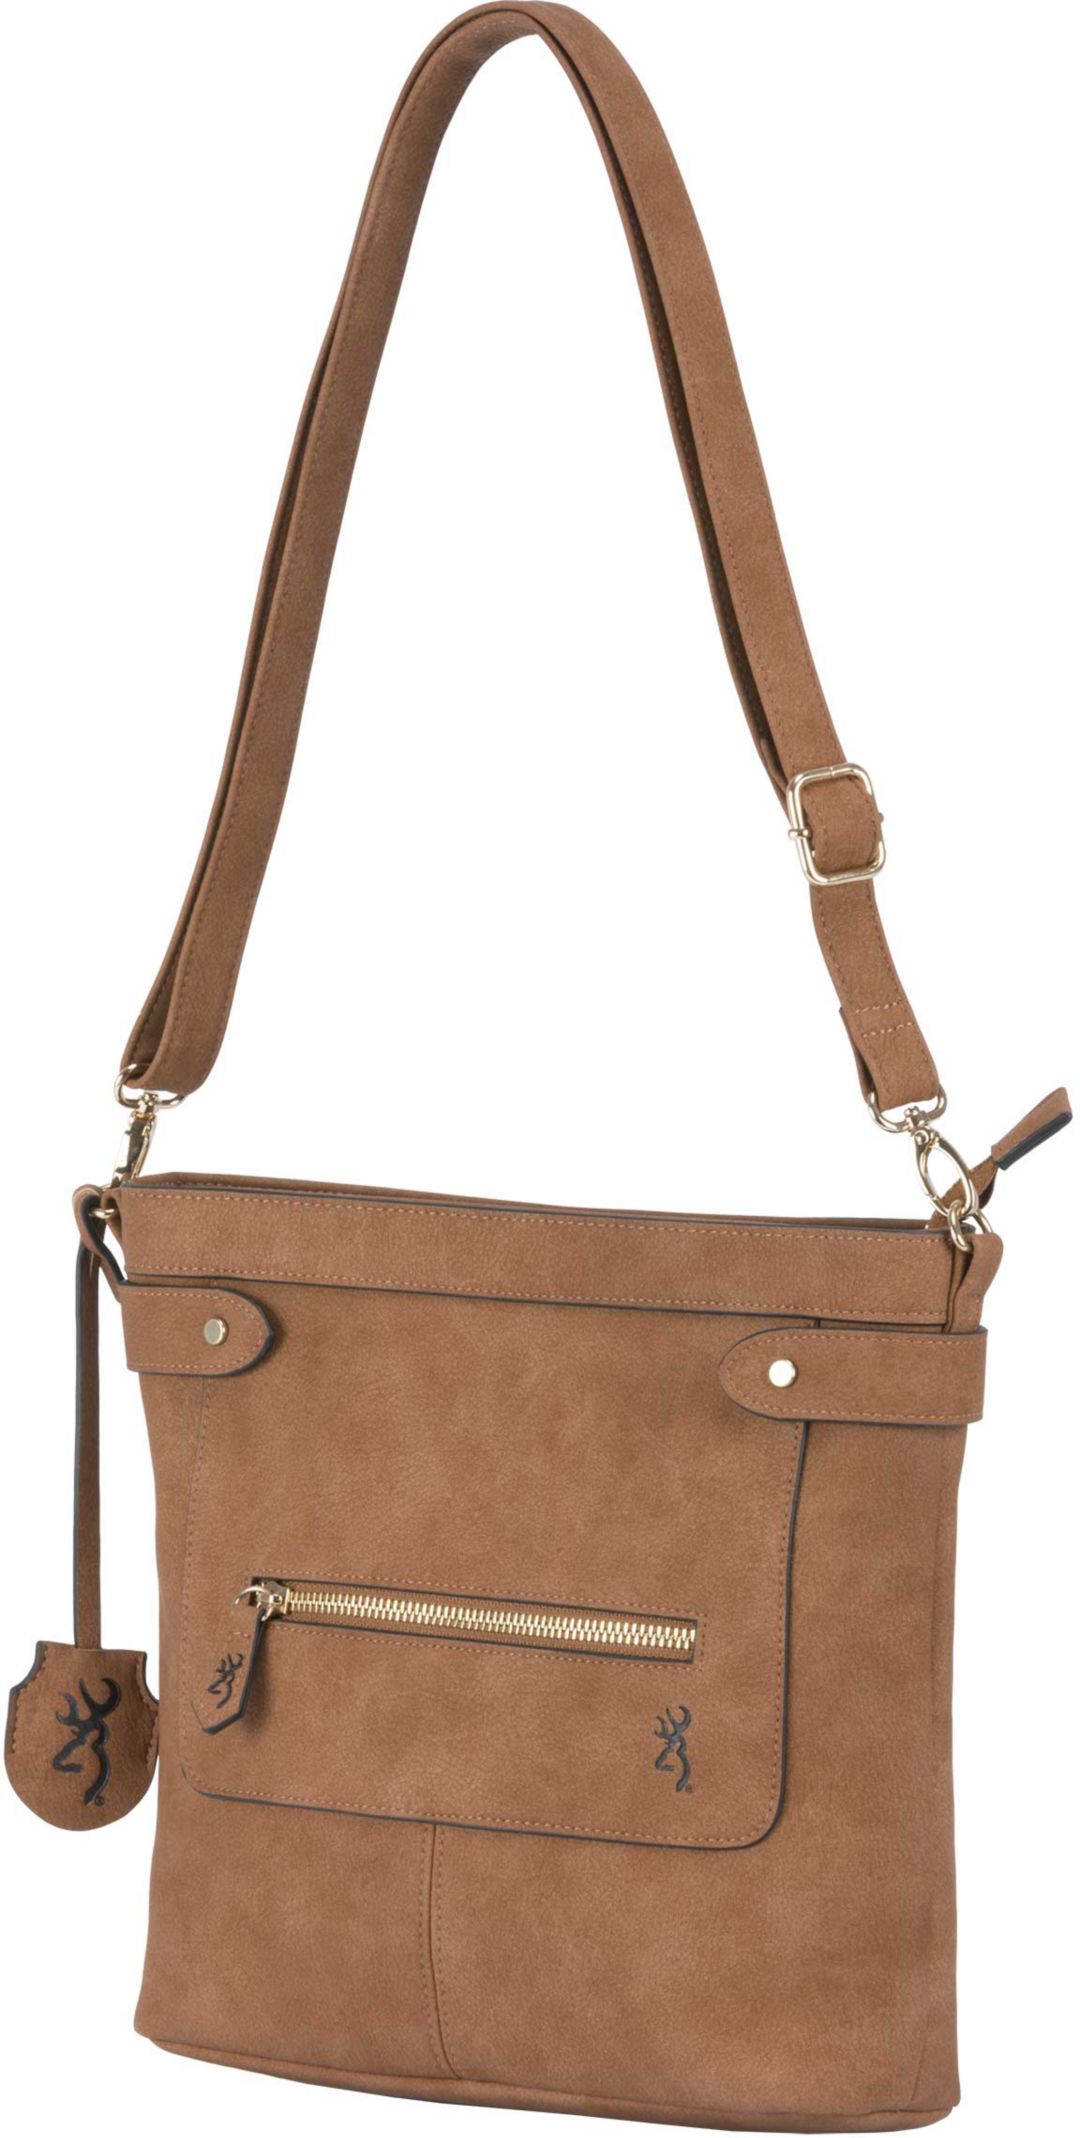 Concealed Carry Purse Handbag | Handbag Reviews 2018